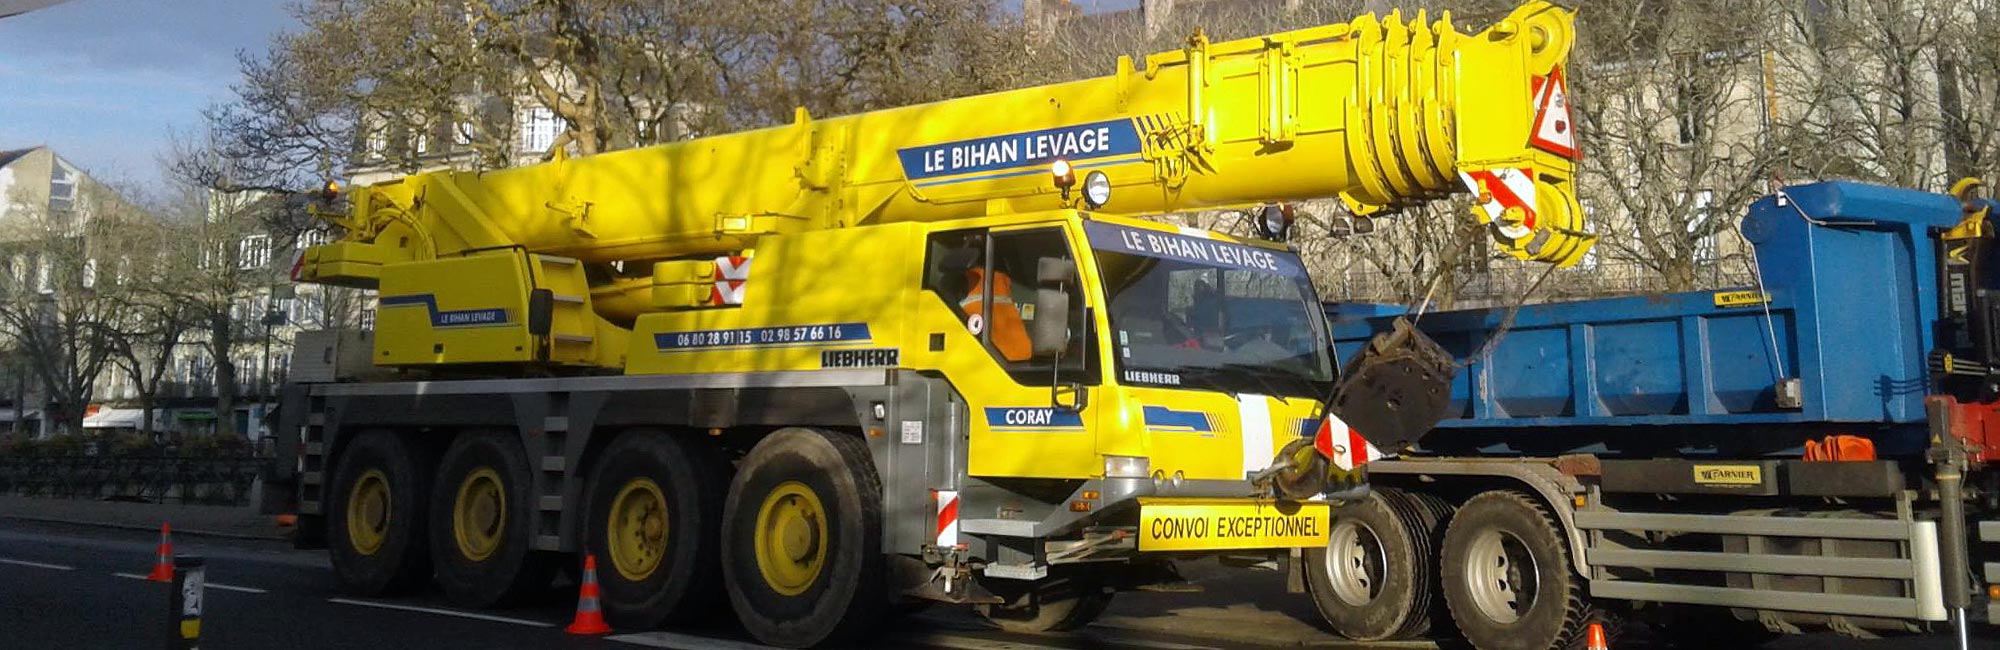 Le Bihan Levage Quimper : camion grue